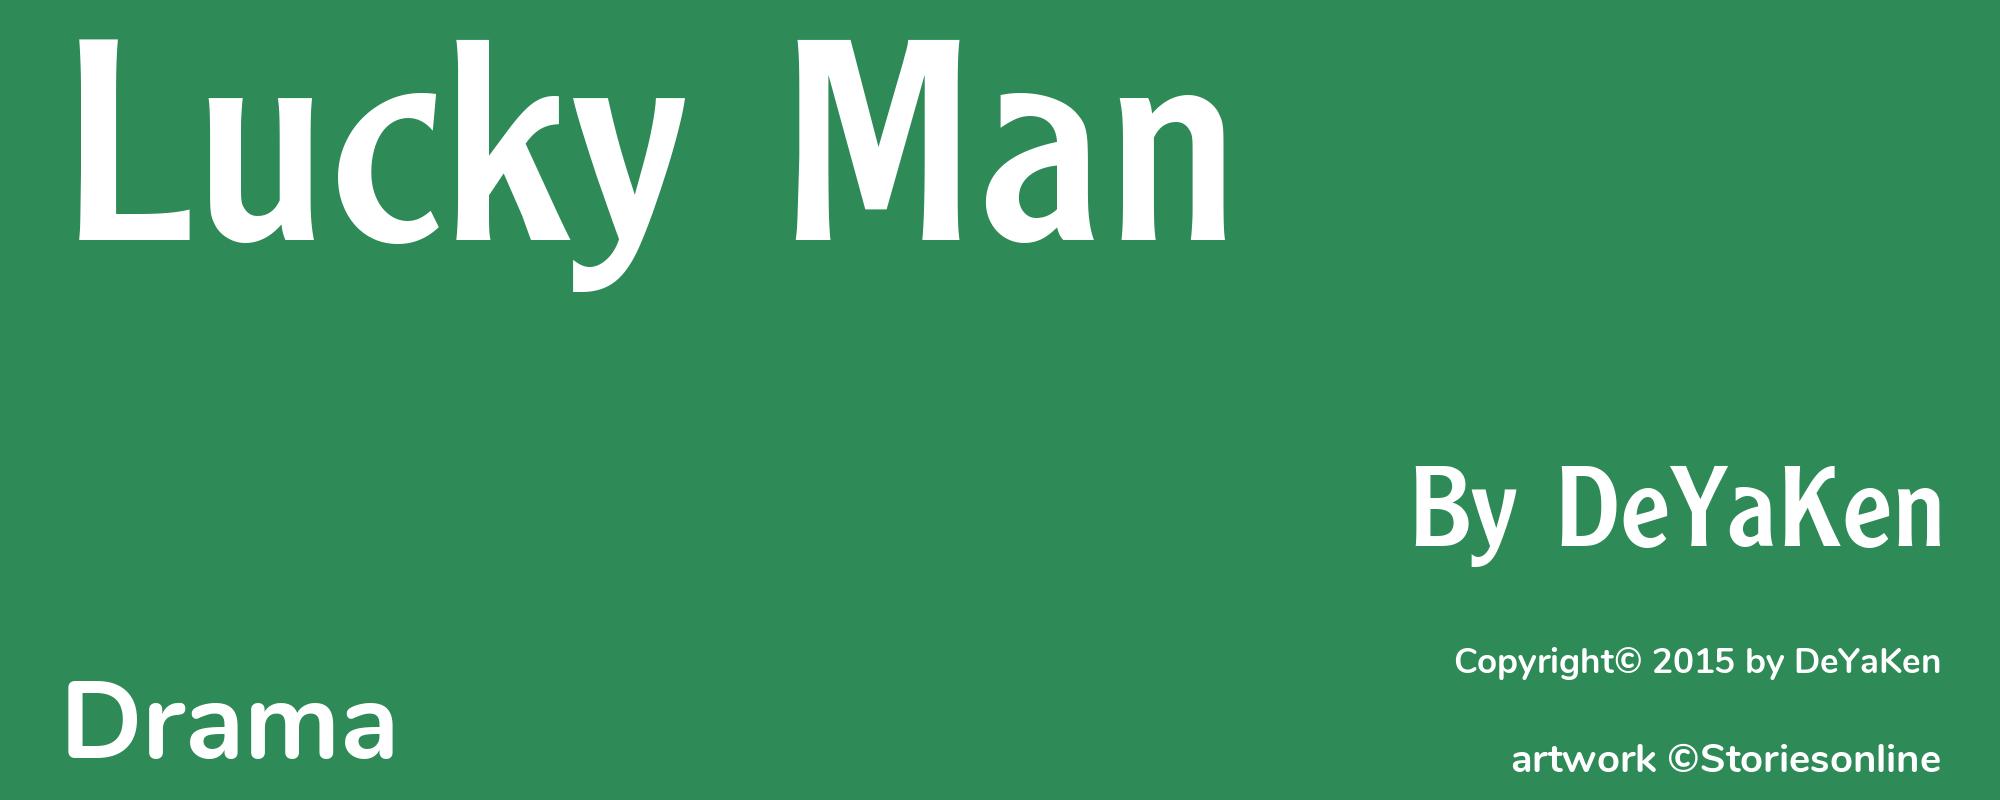 Lucky Man - Cover